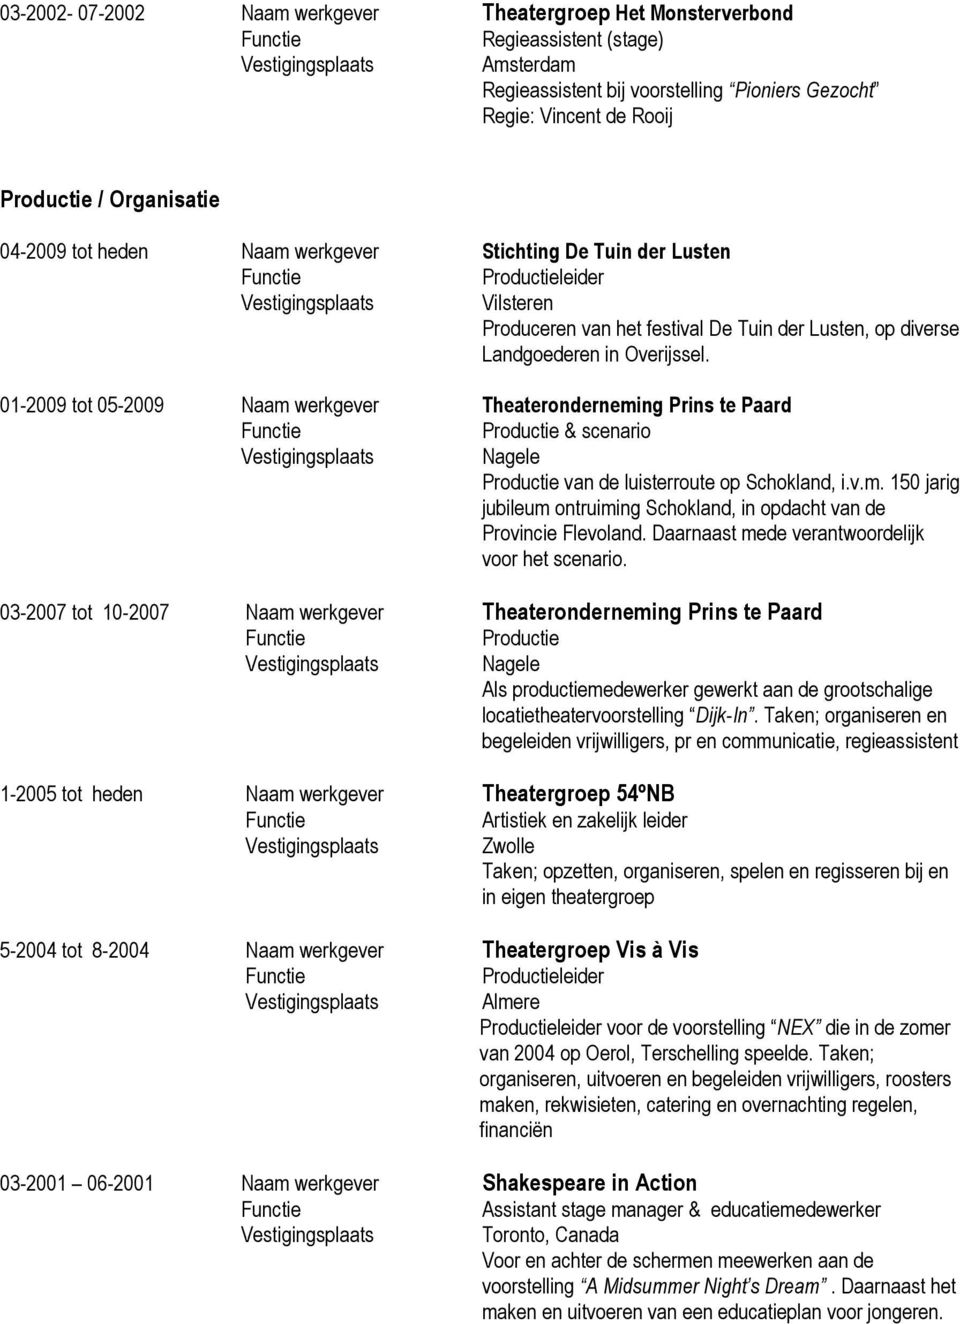 01-2009 tot 05-2009 Naam werkgever Theateronderneming Prins te Paard Productie & scenario Productie van de luisterroute op Schokland, i.v.m. 150 jarig jubileum ontruiming Schokland, in opdacht van de Provincie Flevoland.